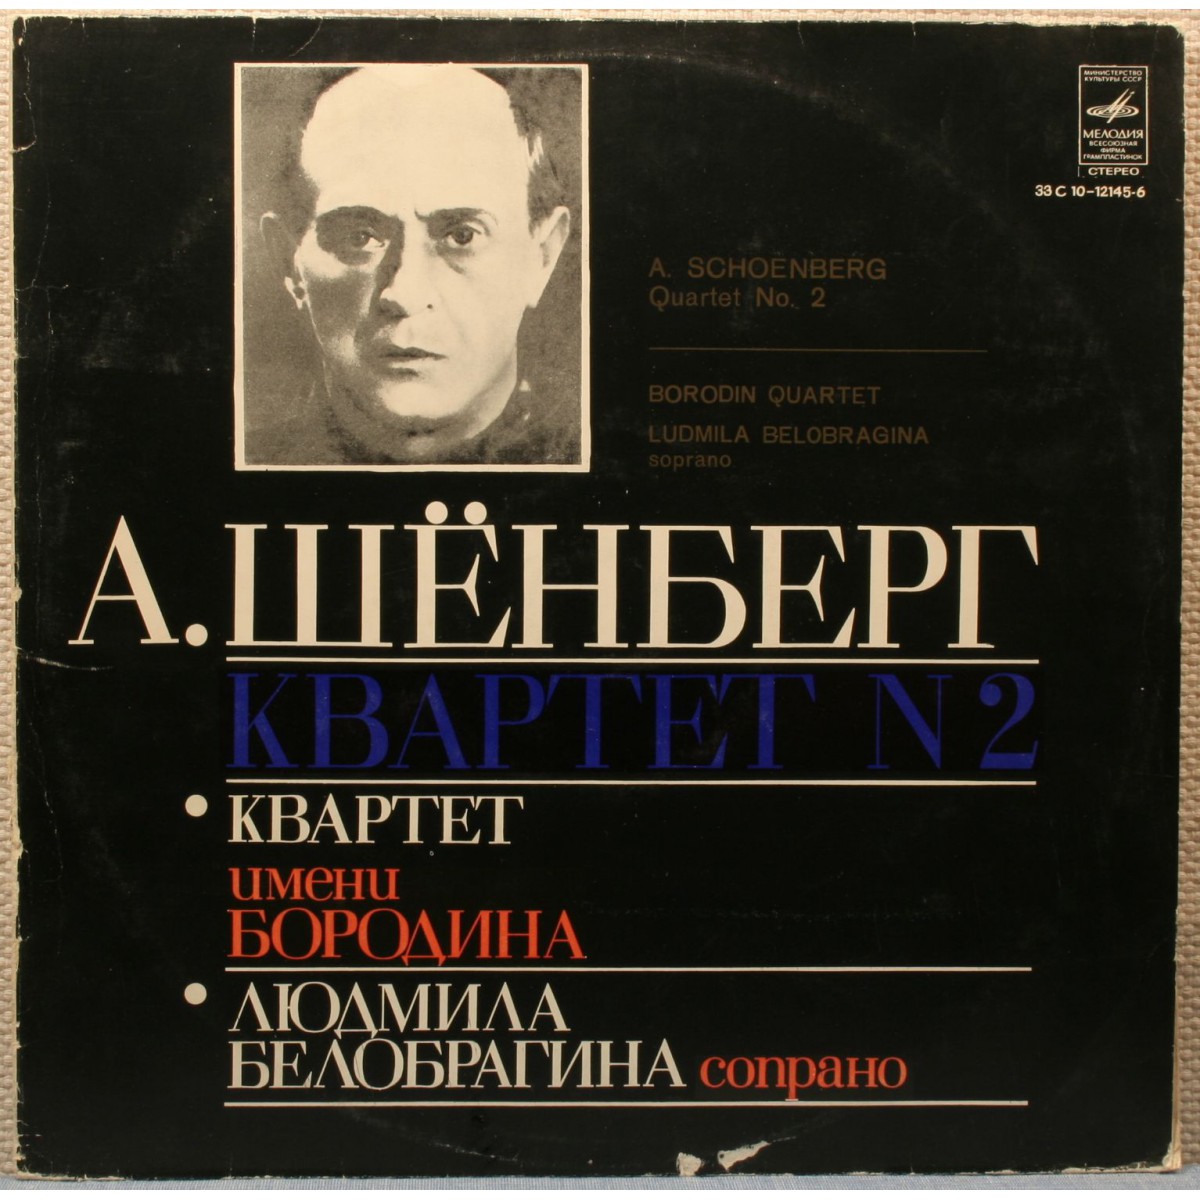 А. ШЕНБЕРГ (1874—1951): Квартет № 2 для двух скрипок, альта и виолончели (с участием сопрано) фа-диез минор, соч. 10.